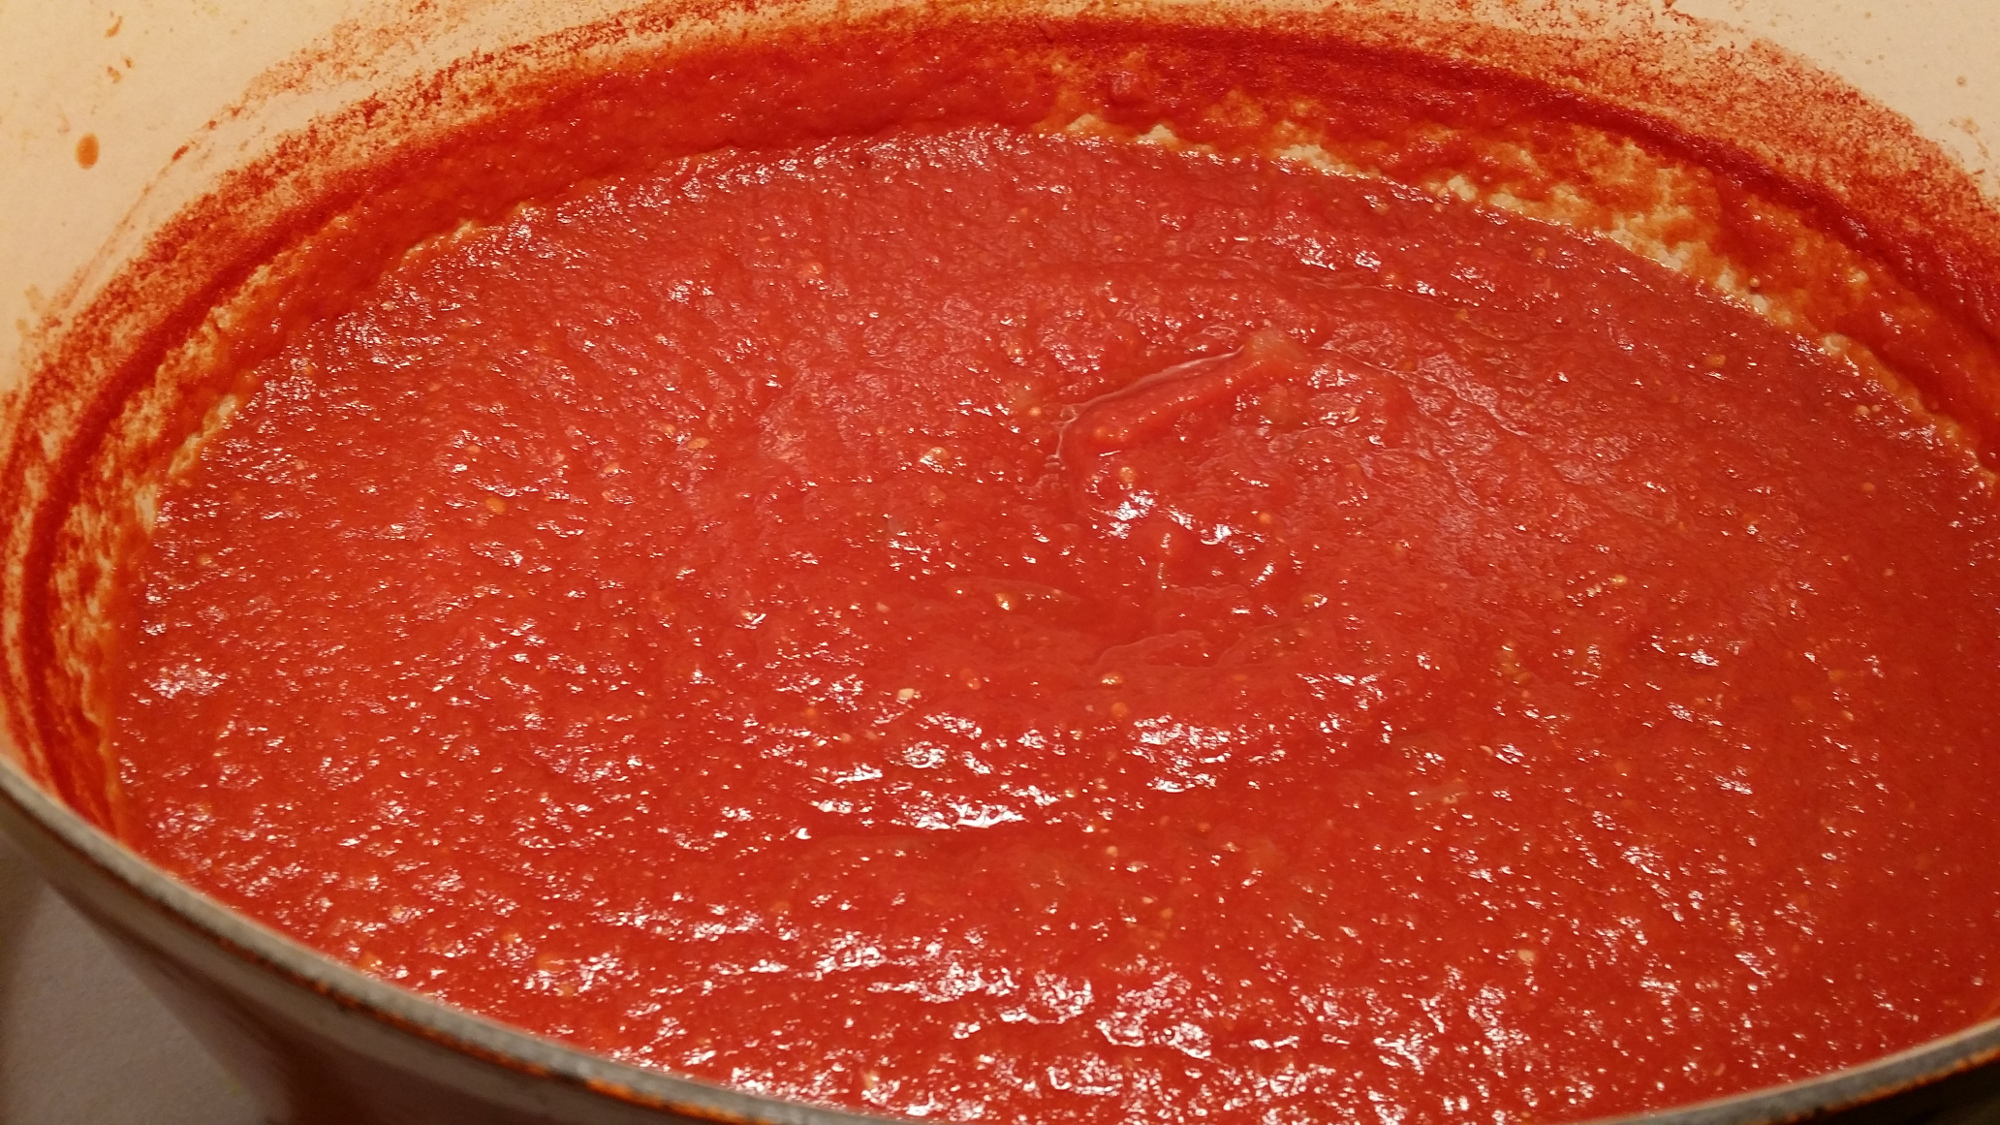 томатный соус из помидоров для пиццы в домашних условиях фото 86